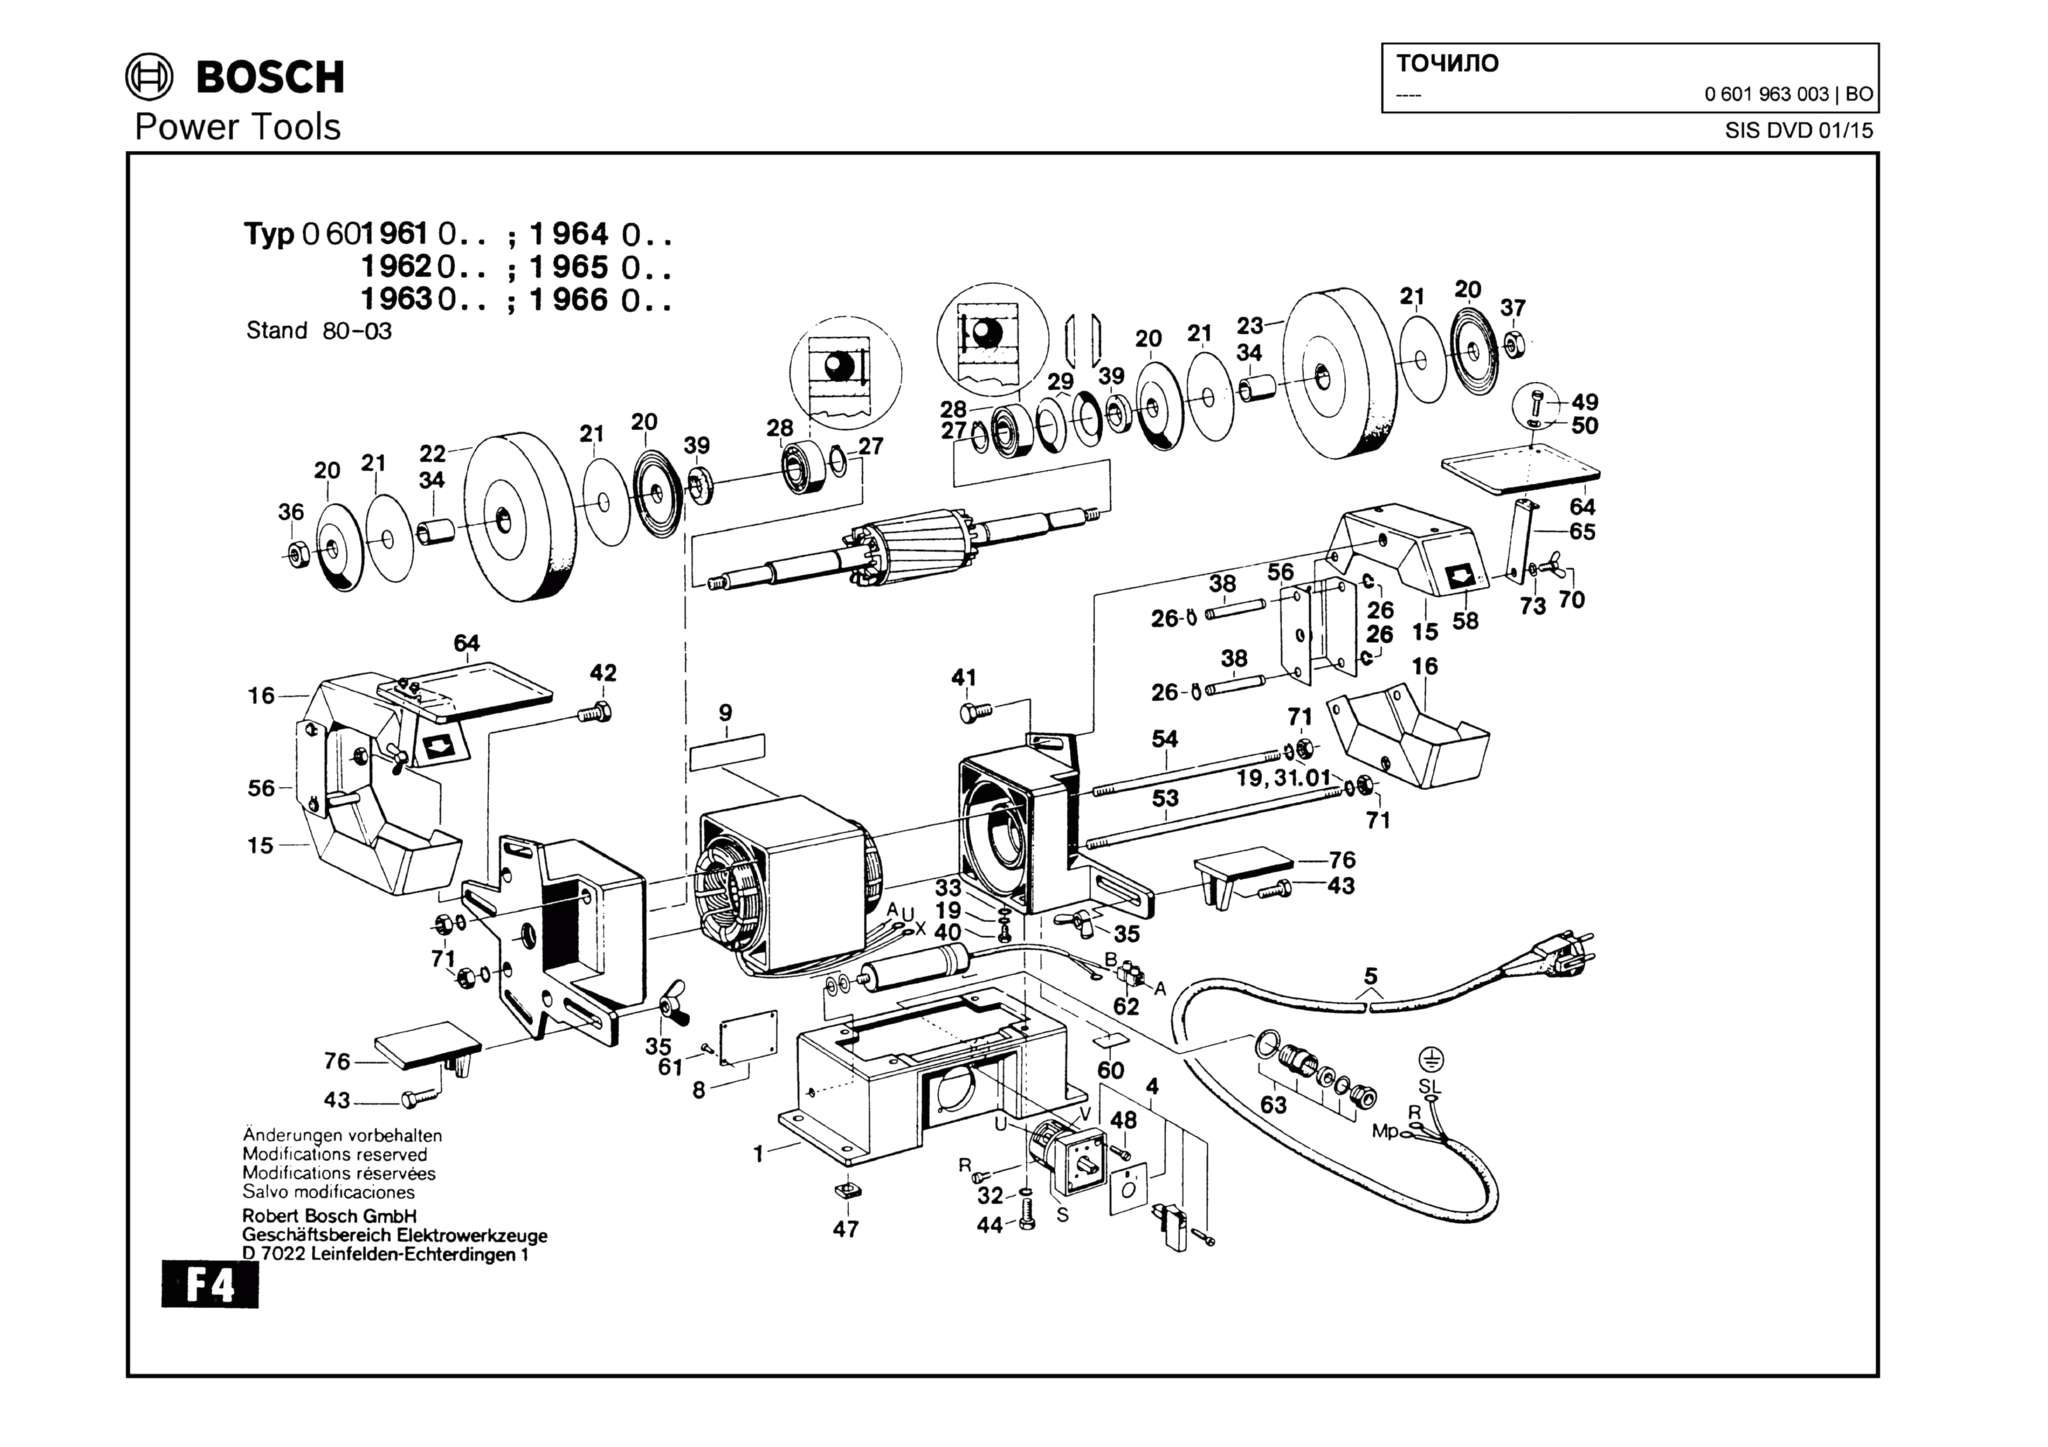 Запчасти, схема и деталировка Bosch (ТИП 0601963003)